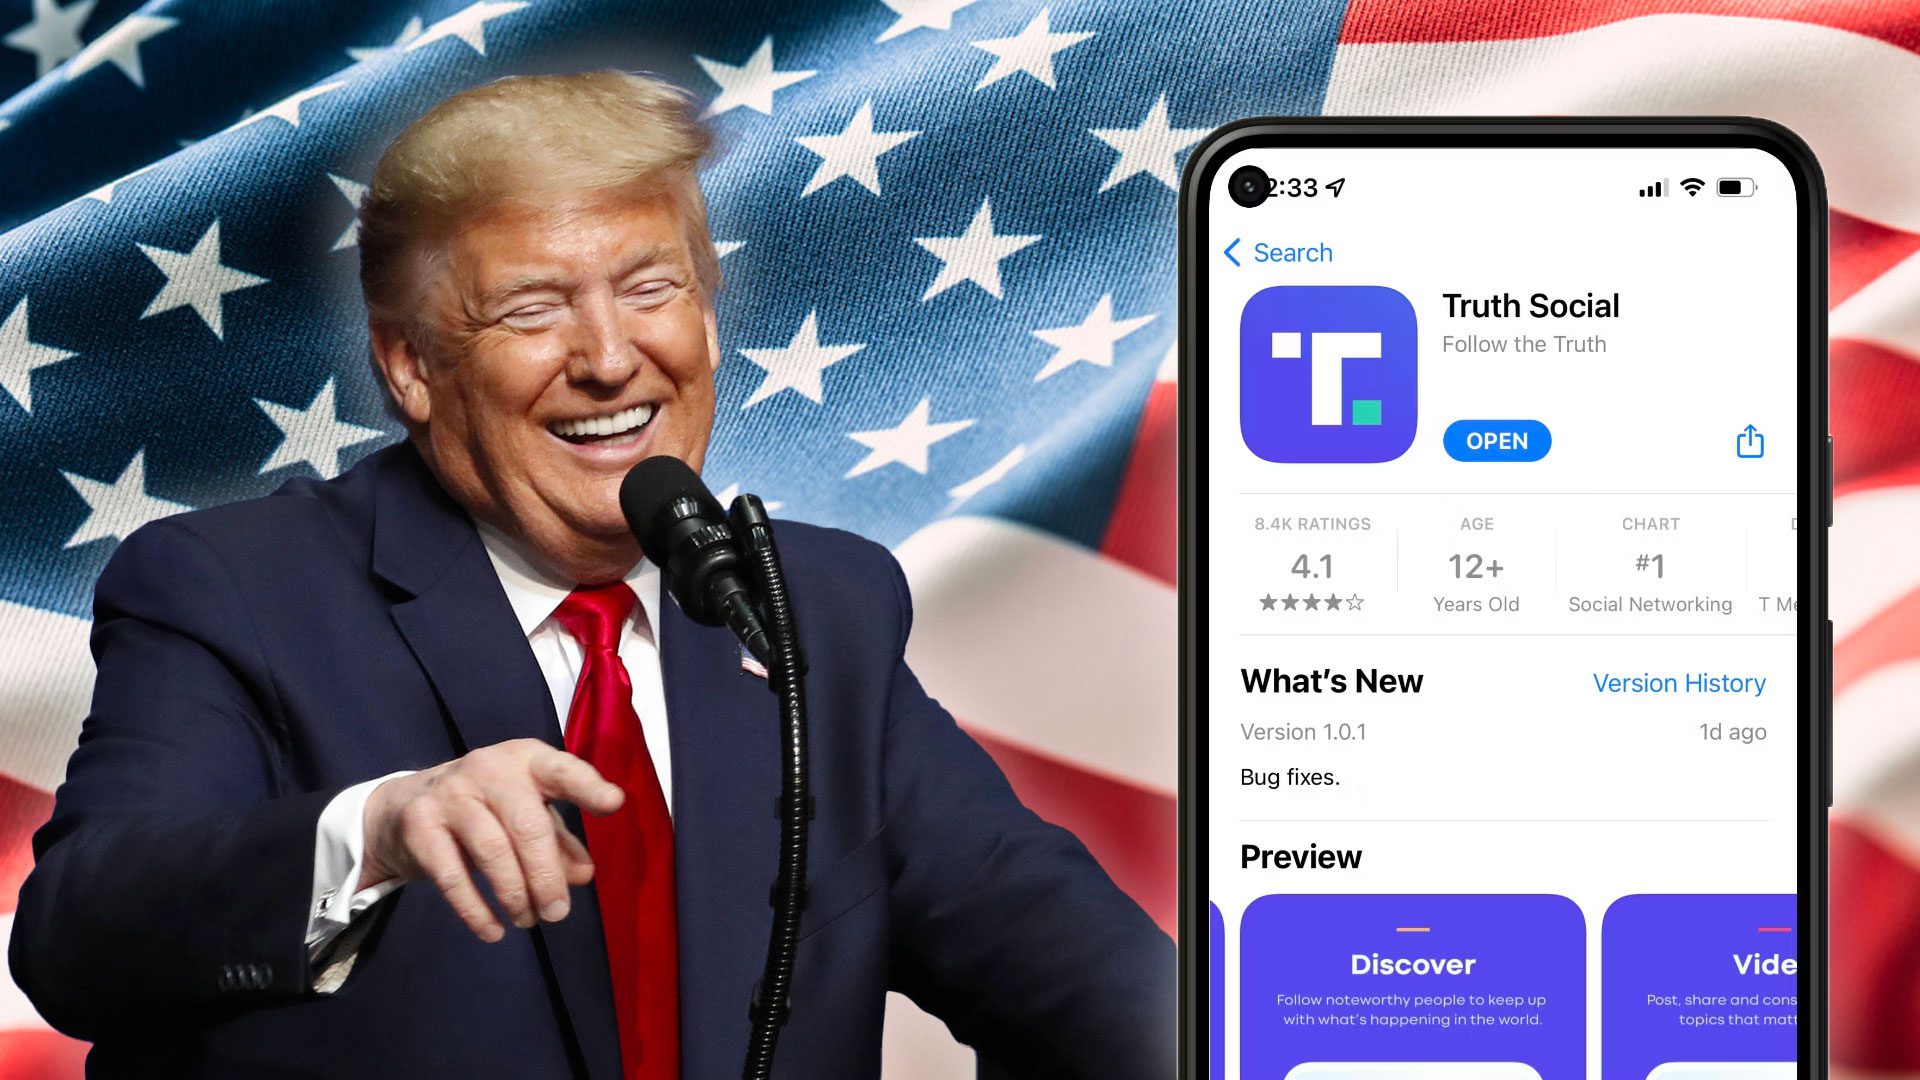 Donald Trump sa smeje, jeho sociálna sieť Truth Social sa vracia do Google Play